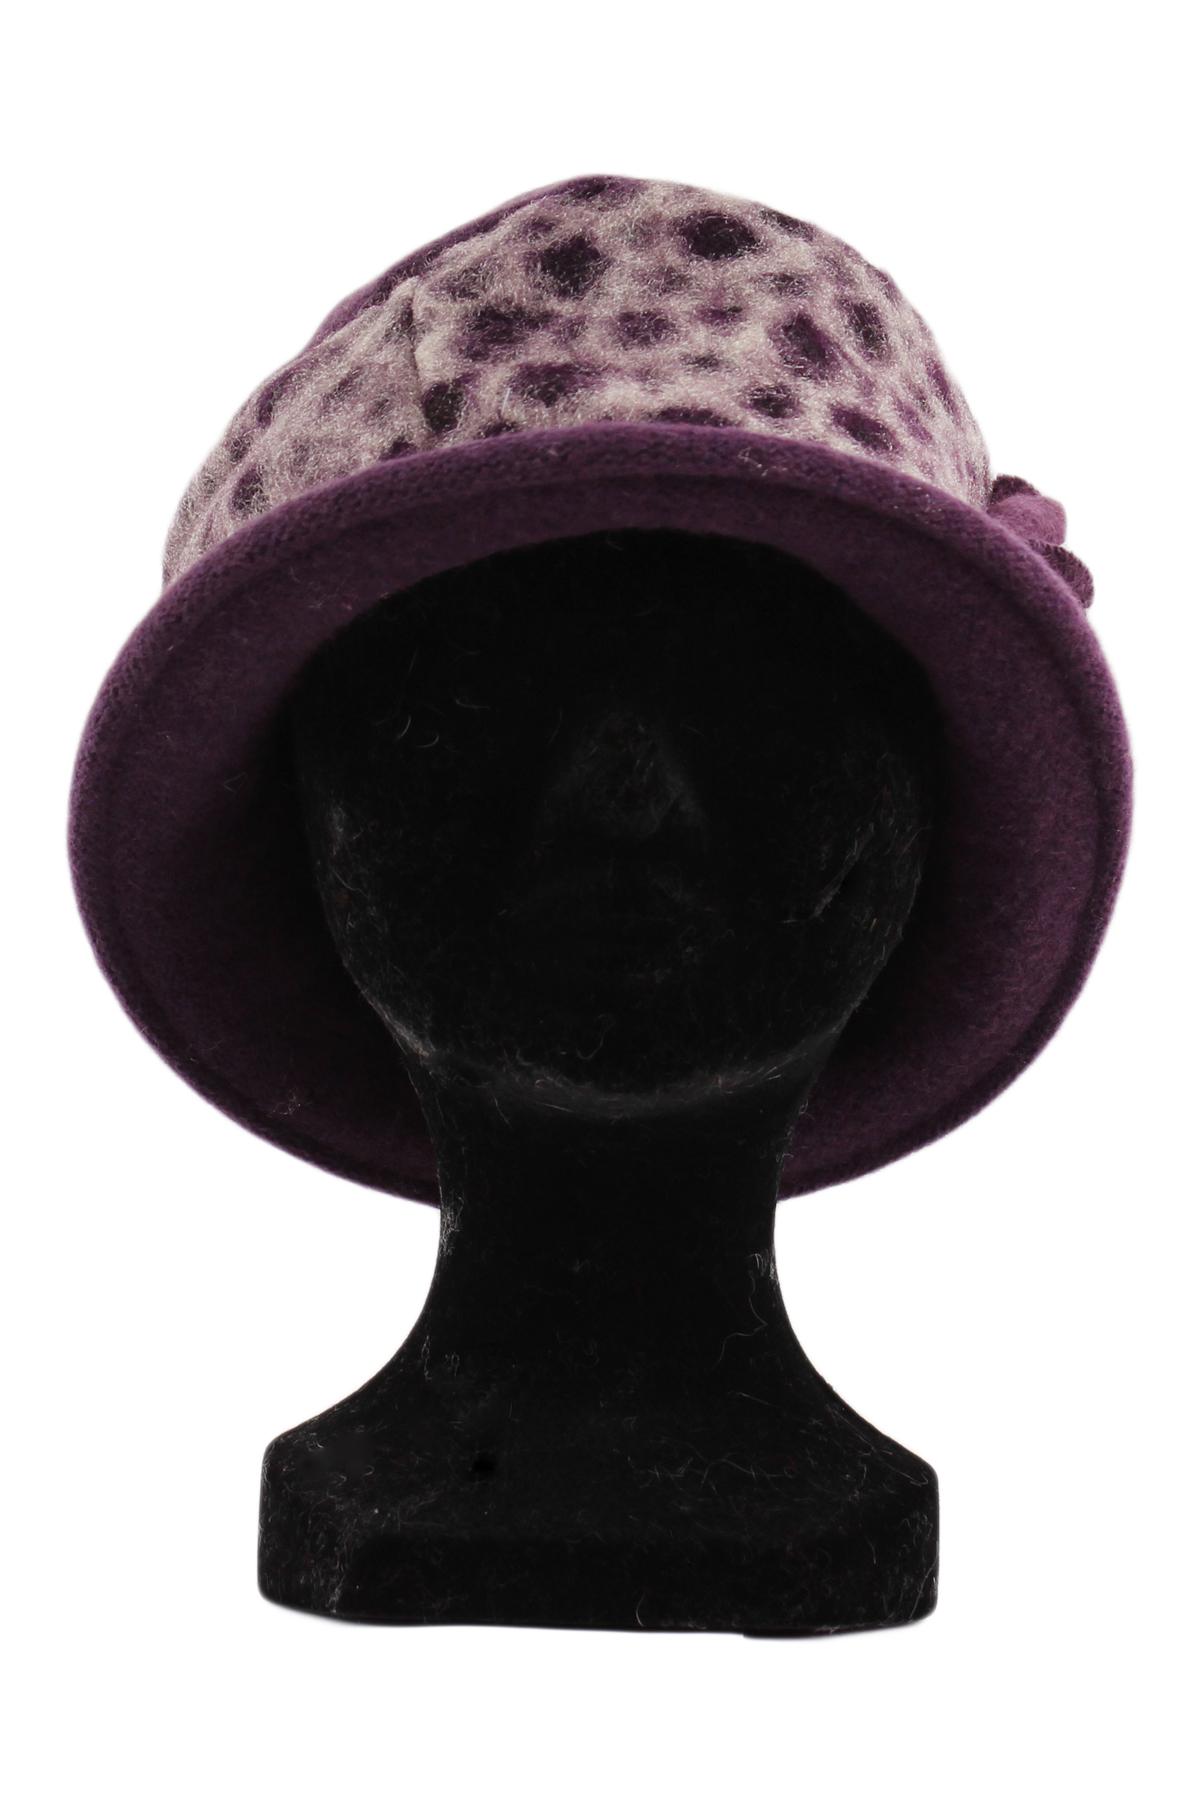 Hats Accessories Purple Lil Moon HL-1436 #c Efashion Paris